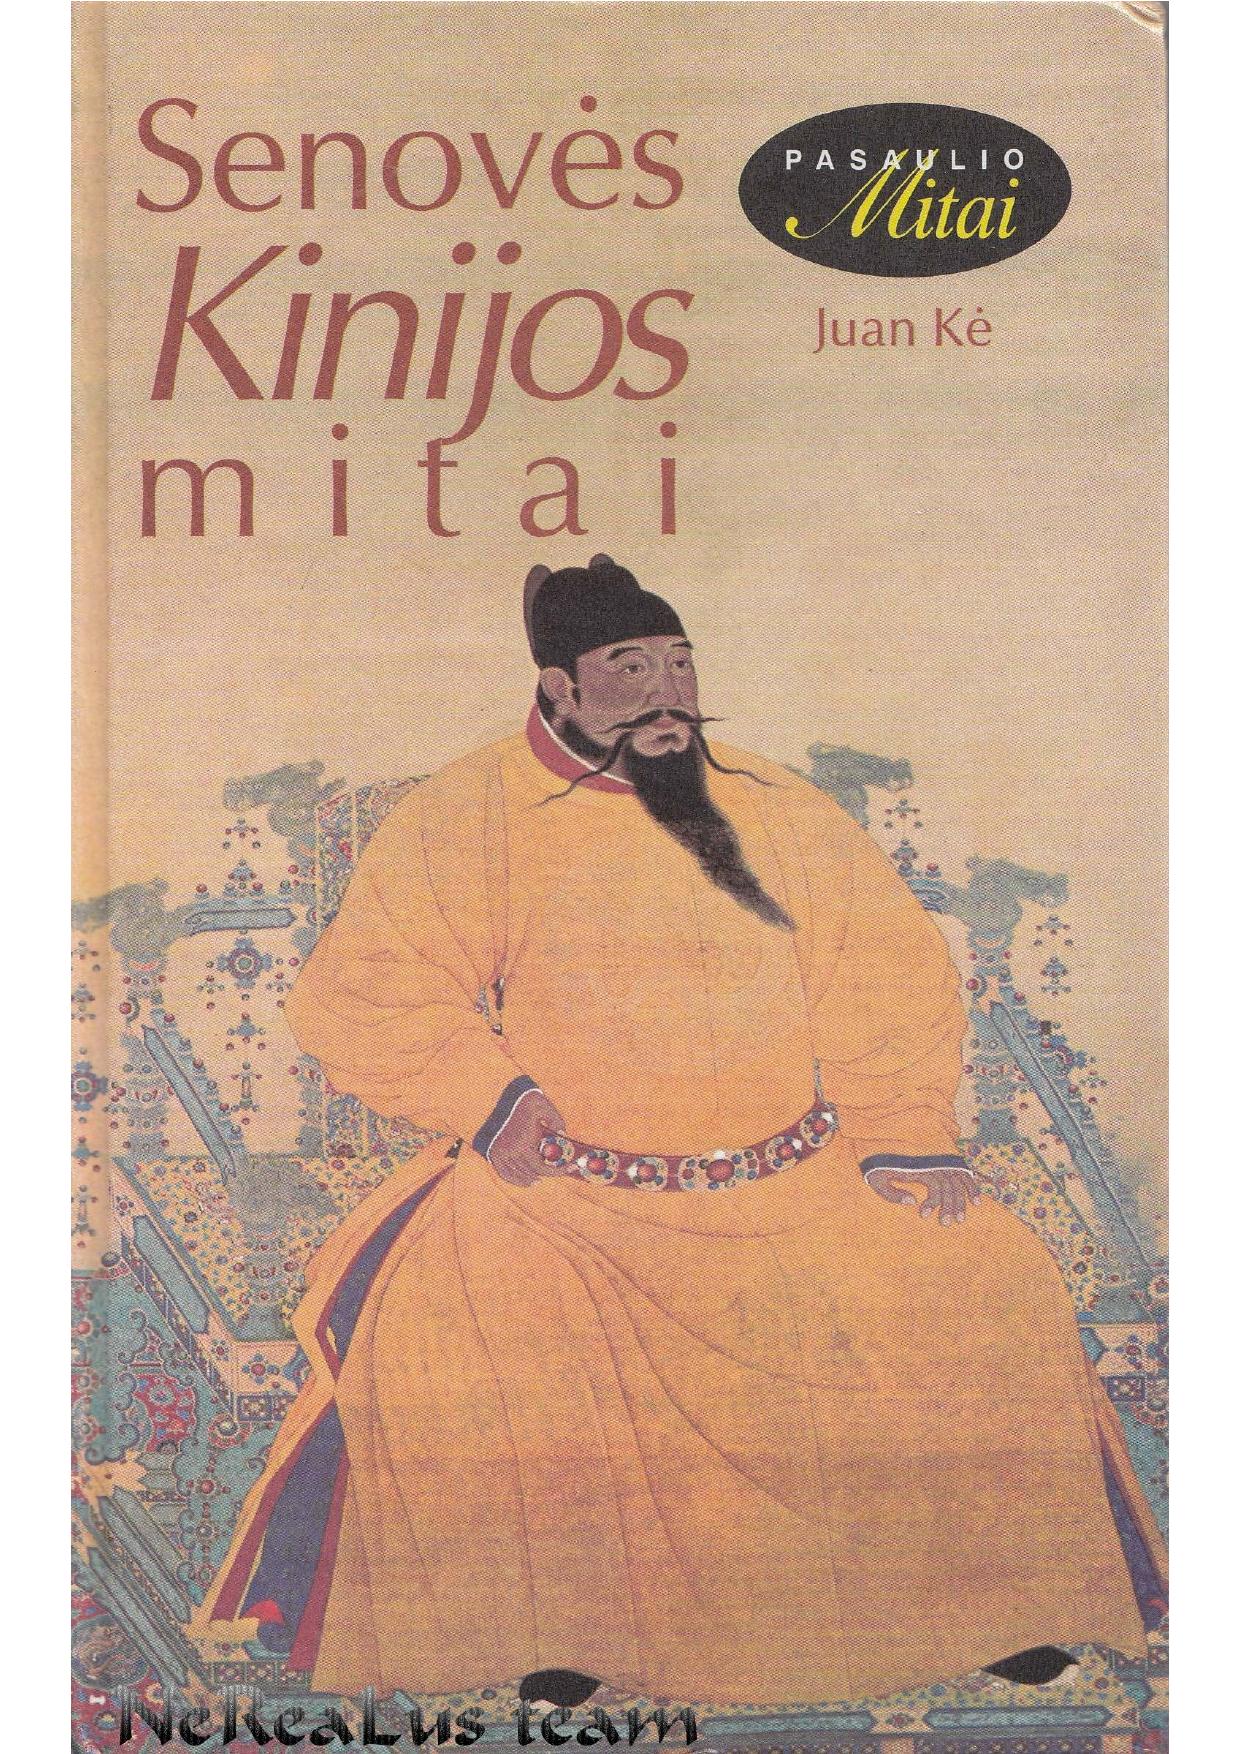 Juan Kė - Senovės Kinijos mitai (1998) LT - NRL